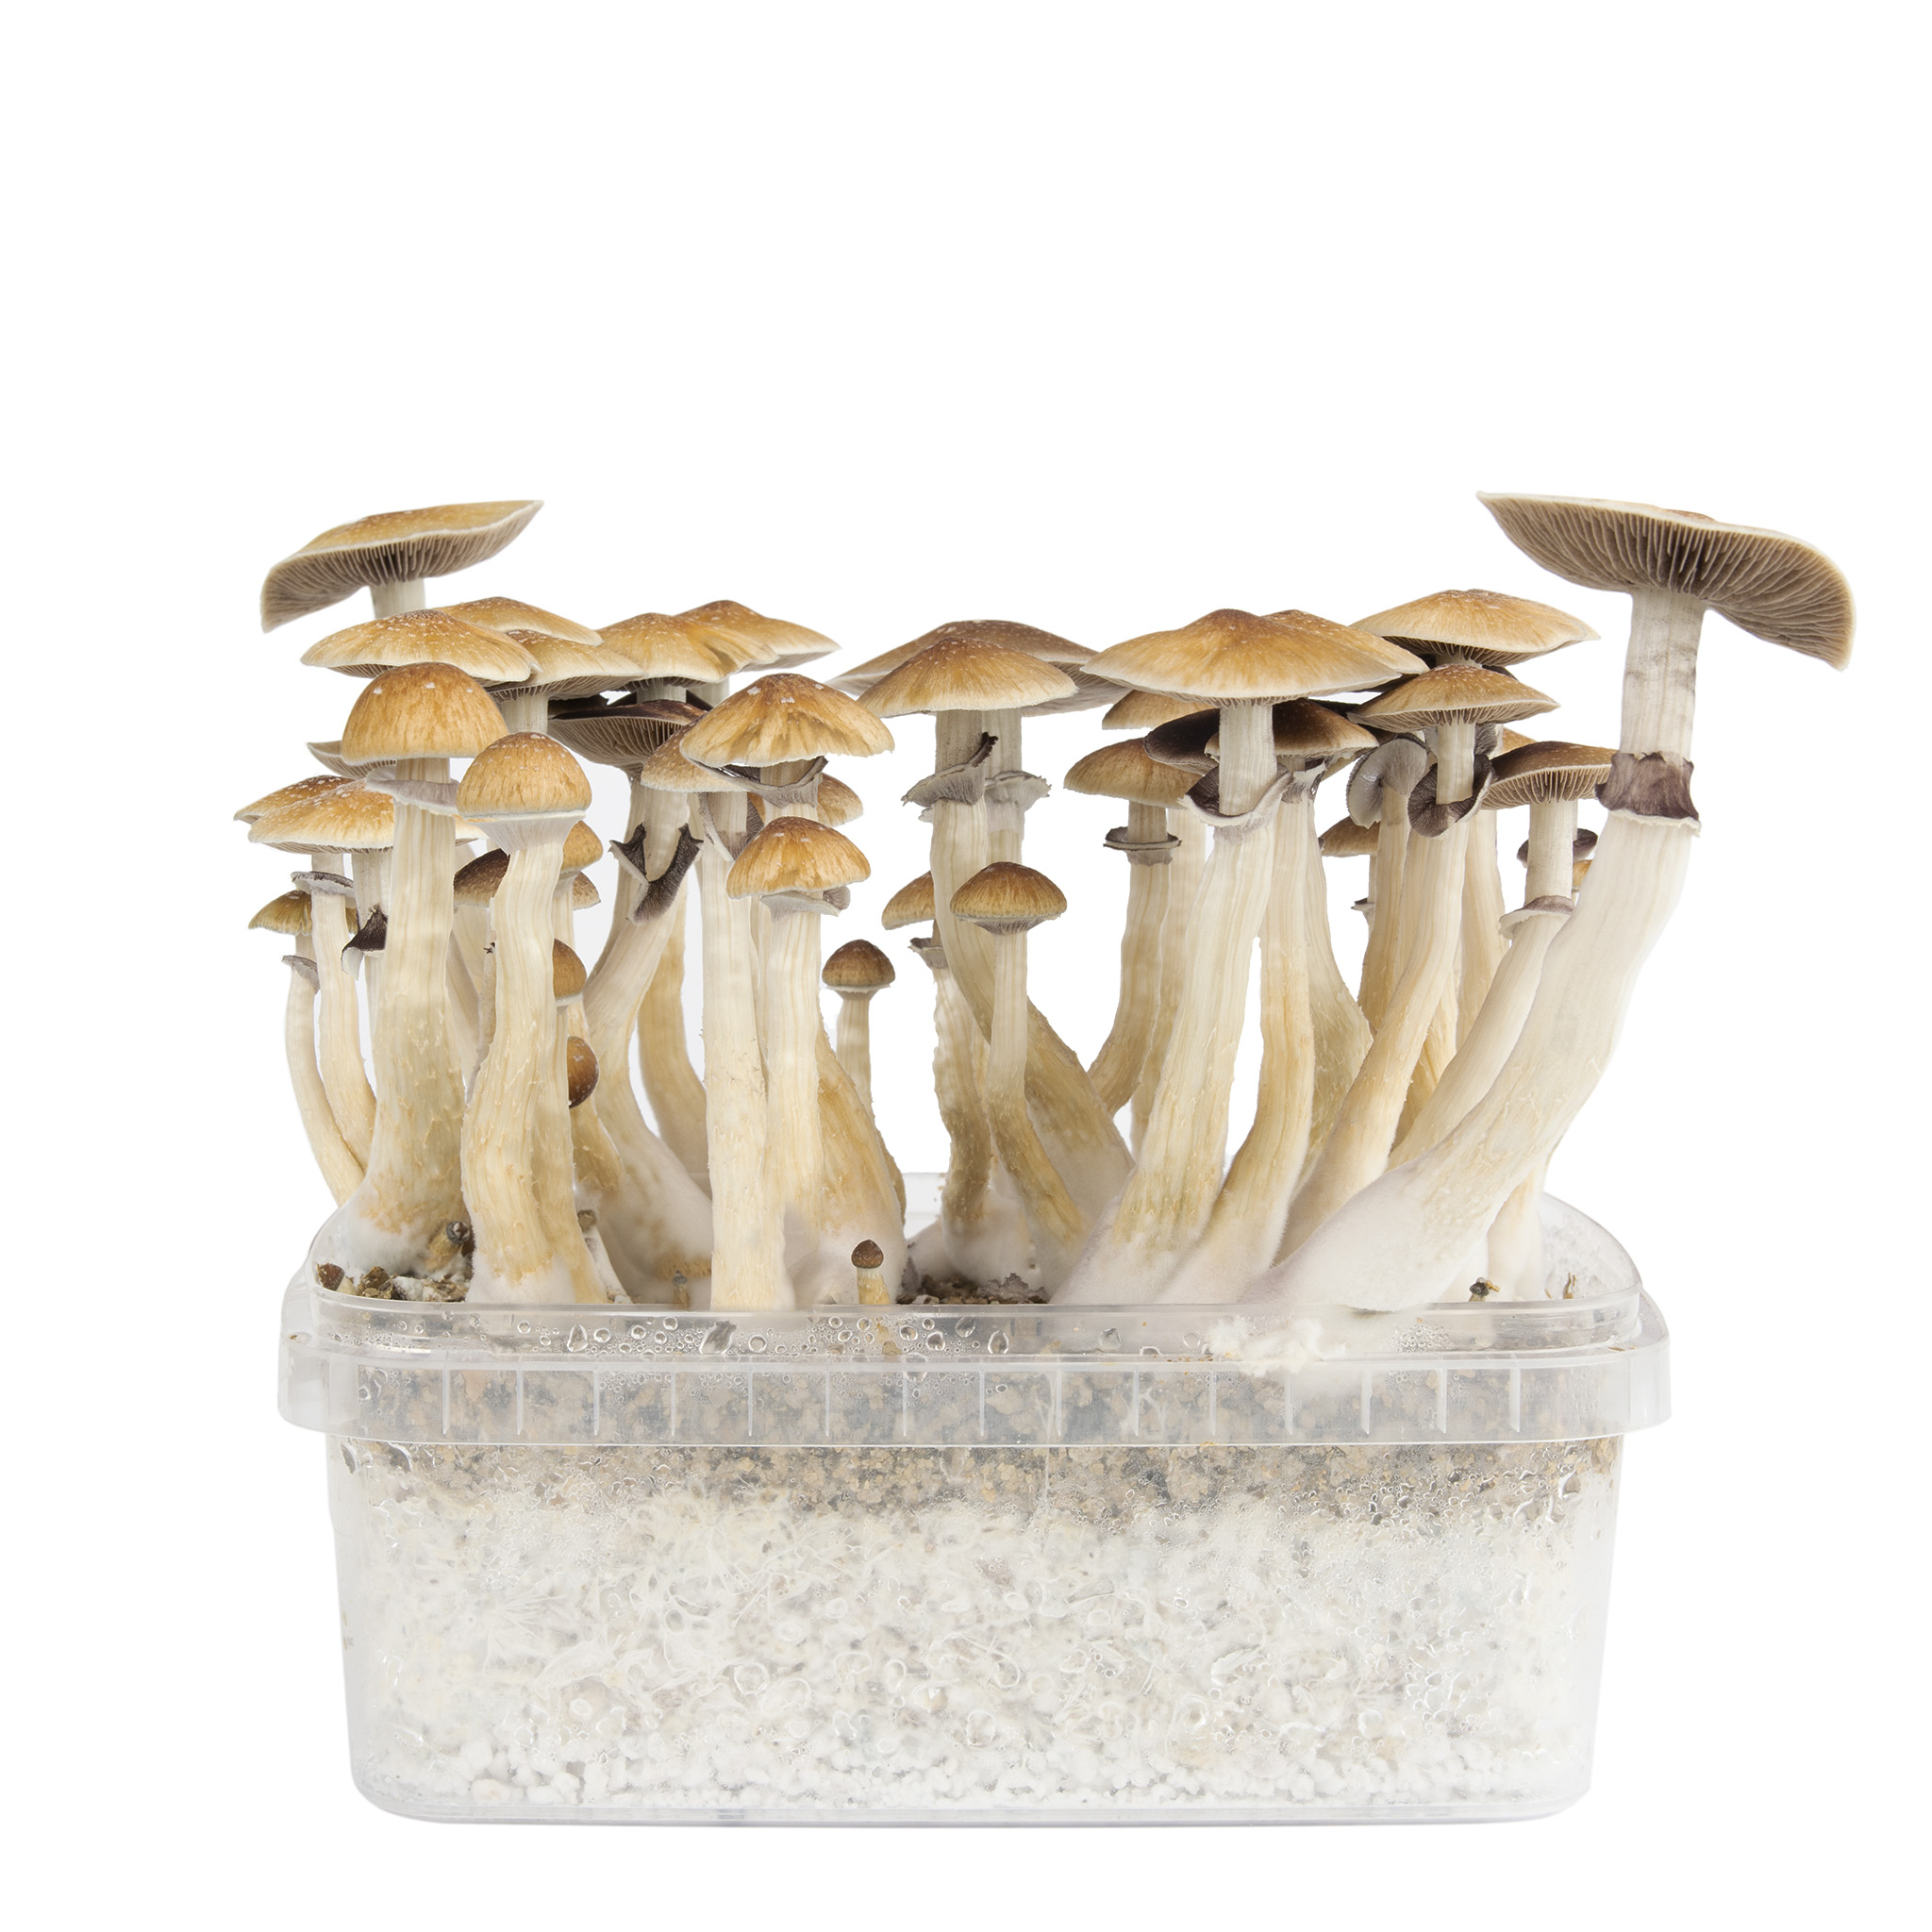 magic mushroom grow box